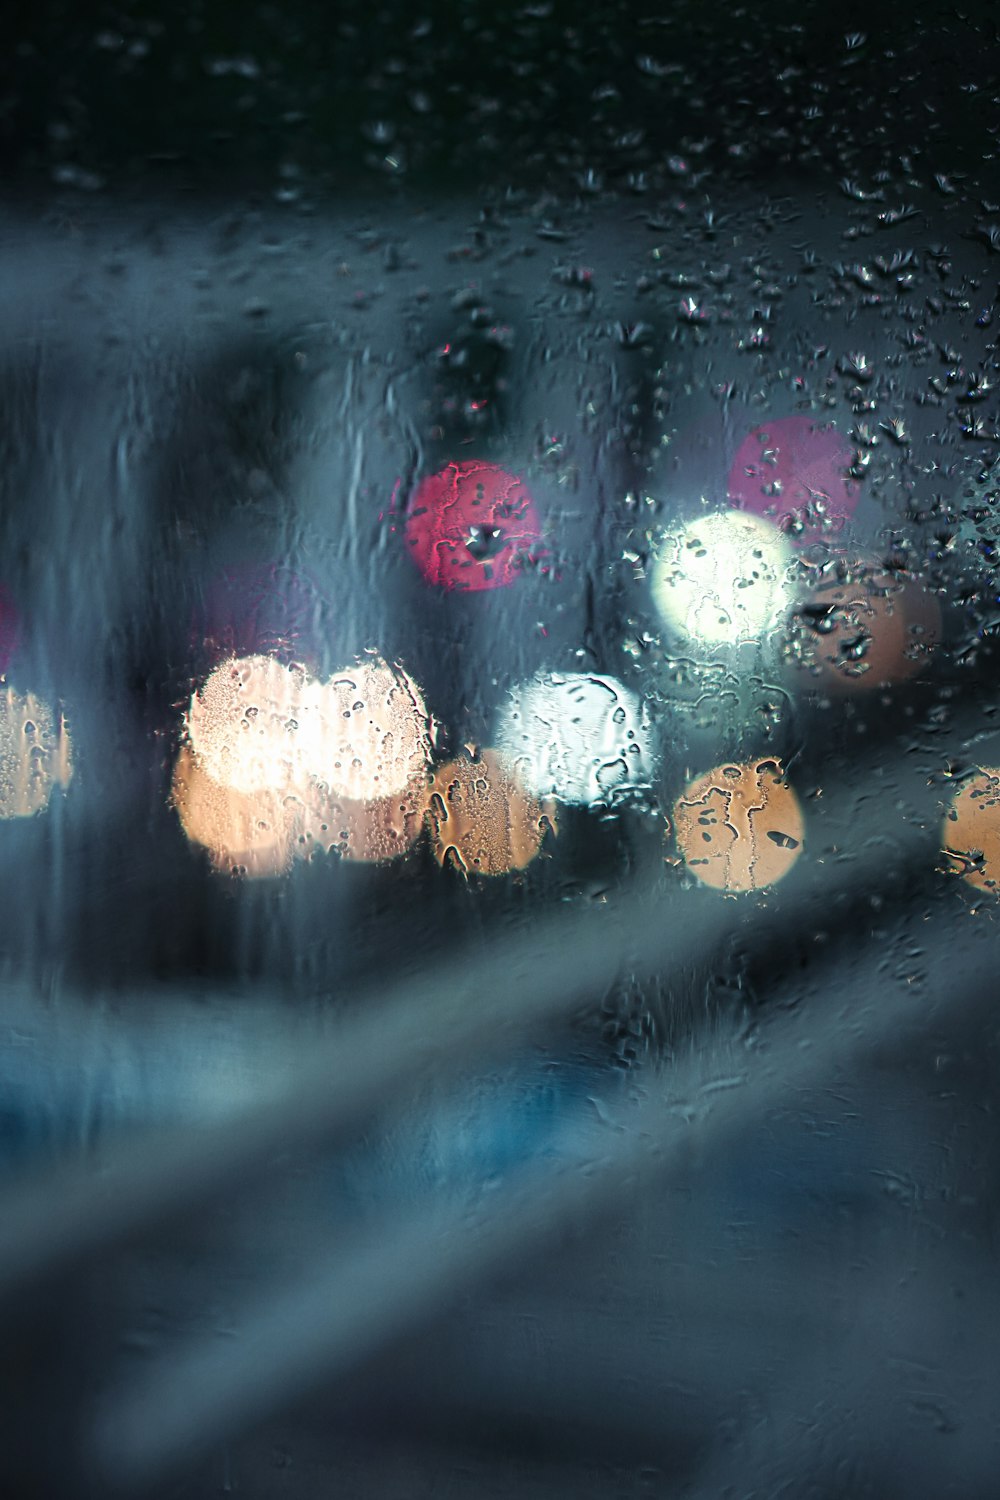 une vue d’une rue de la ville à travers une fenêtre couverte de pluie